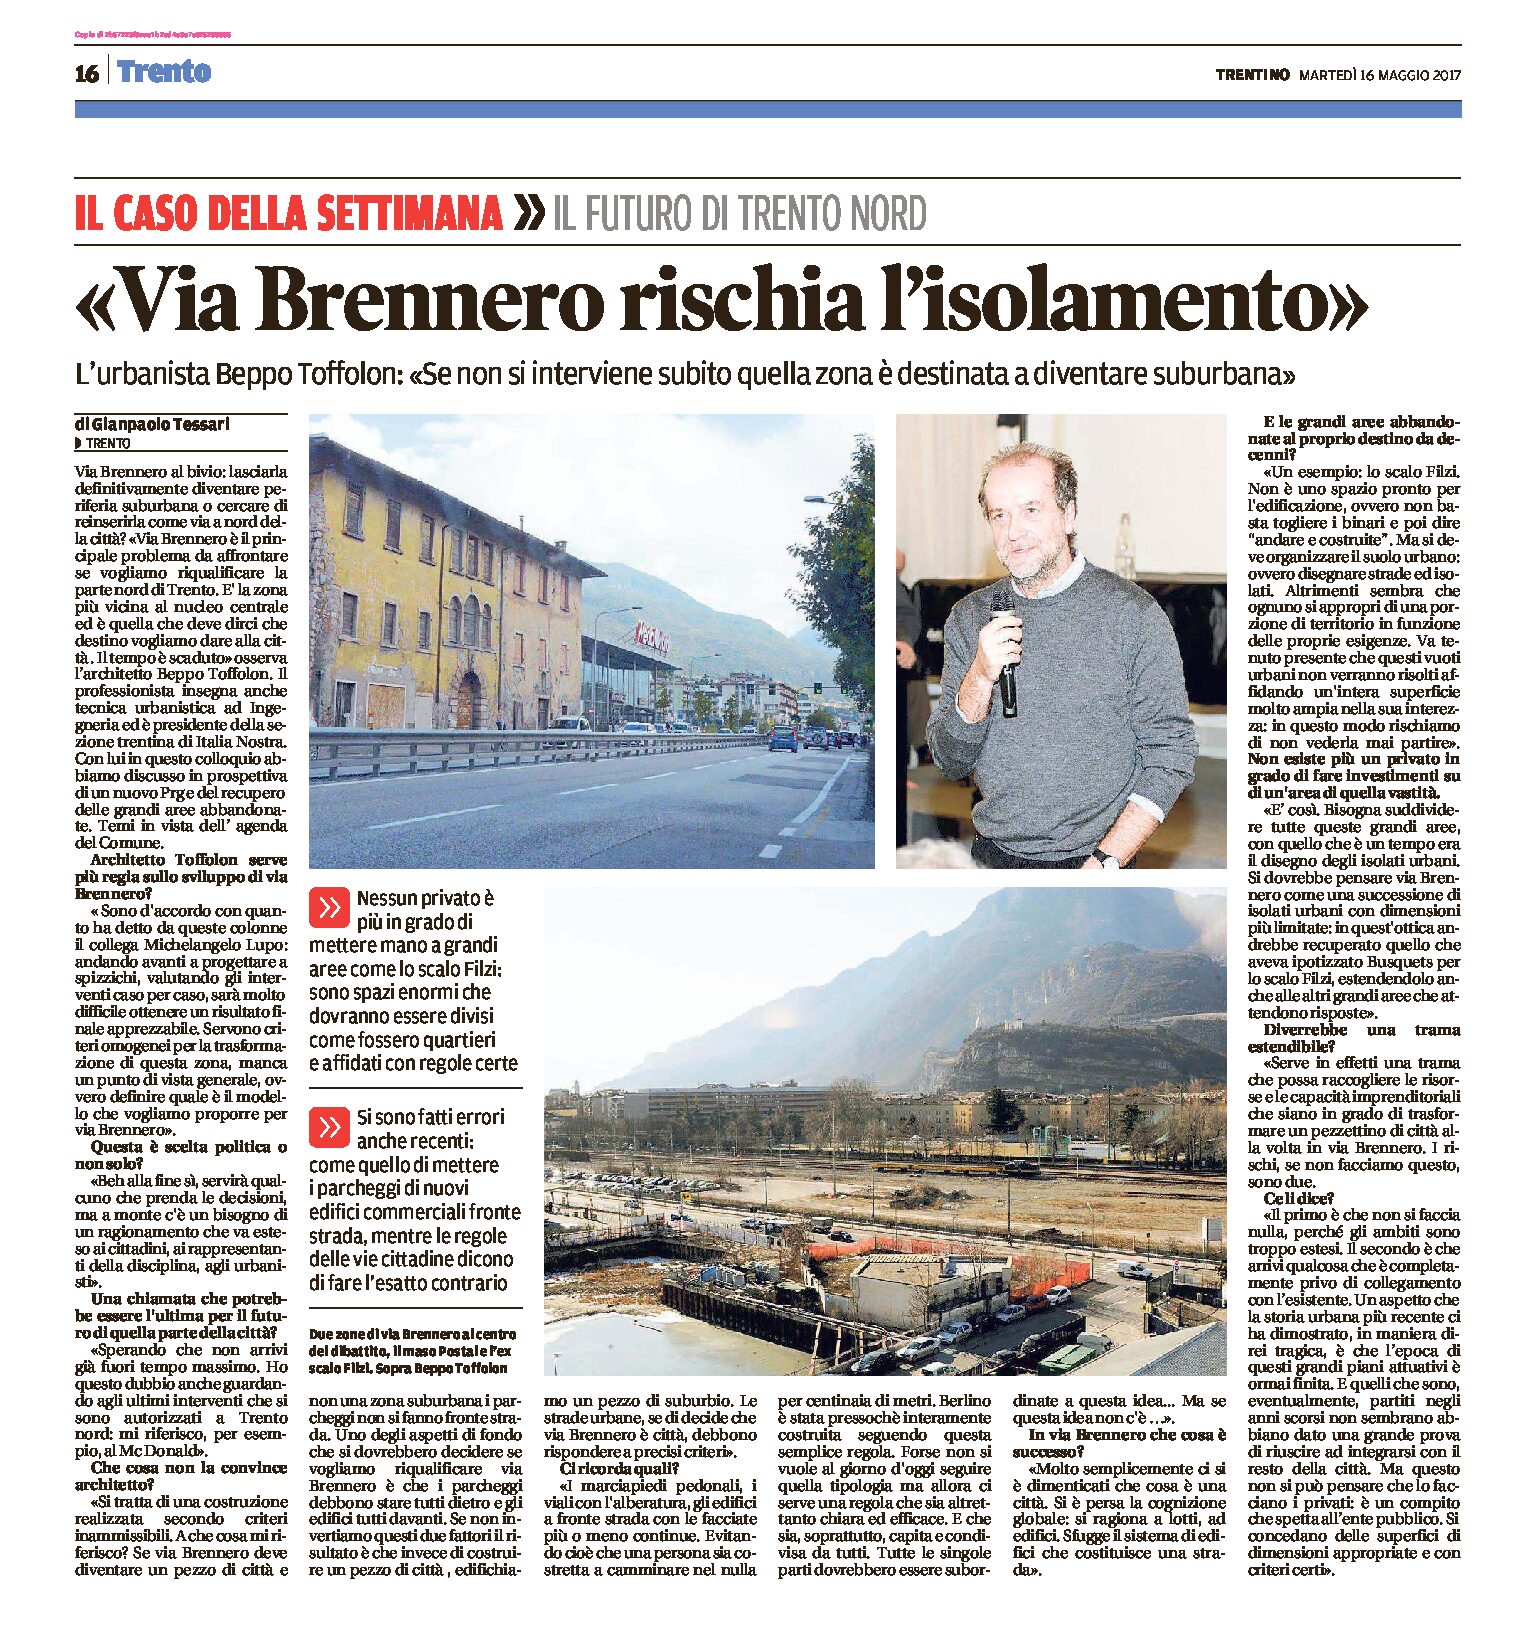 Trento, via Brennero: Toffolon “se non si interviene subito quella zona è destinata a diventare suburbana”